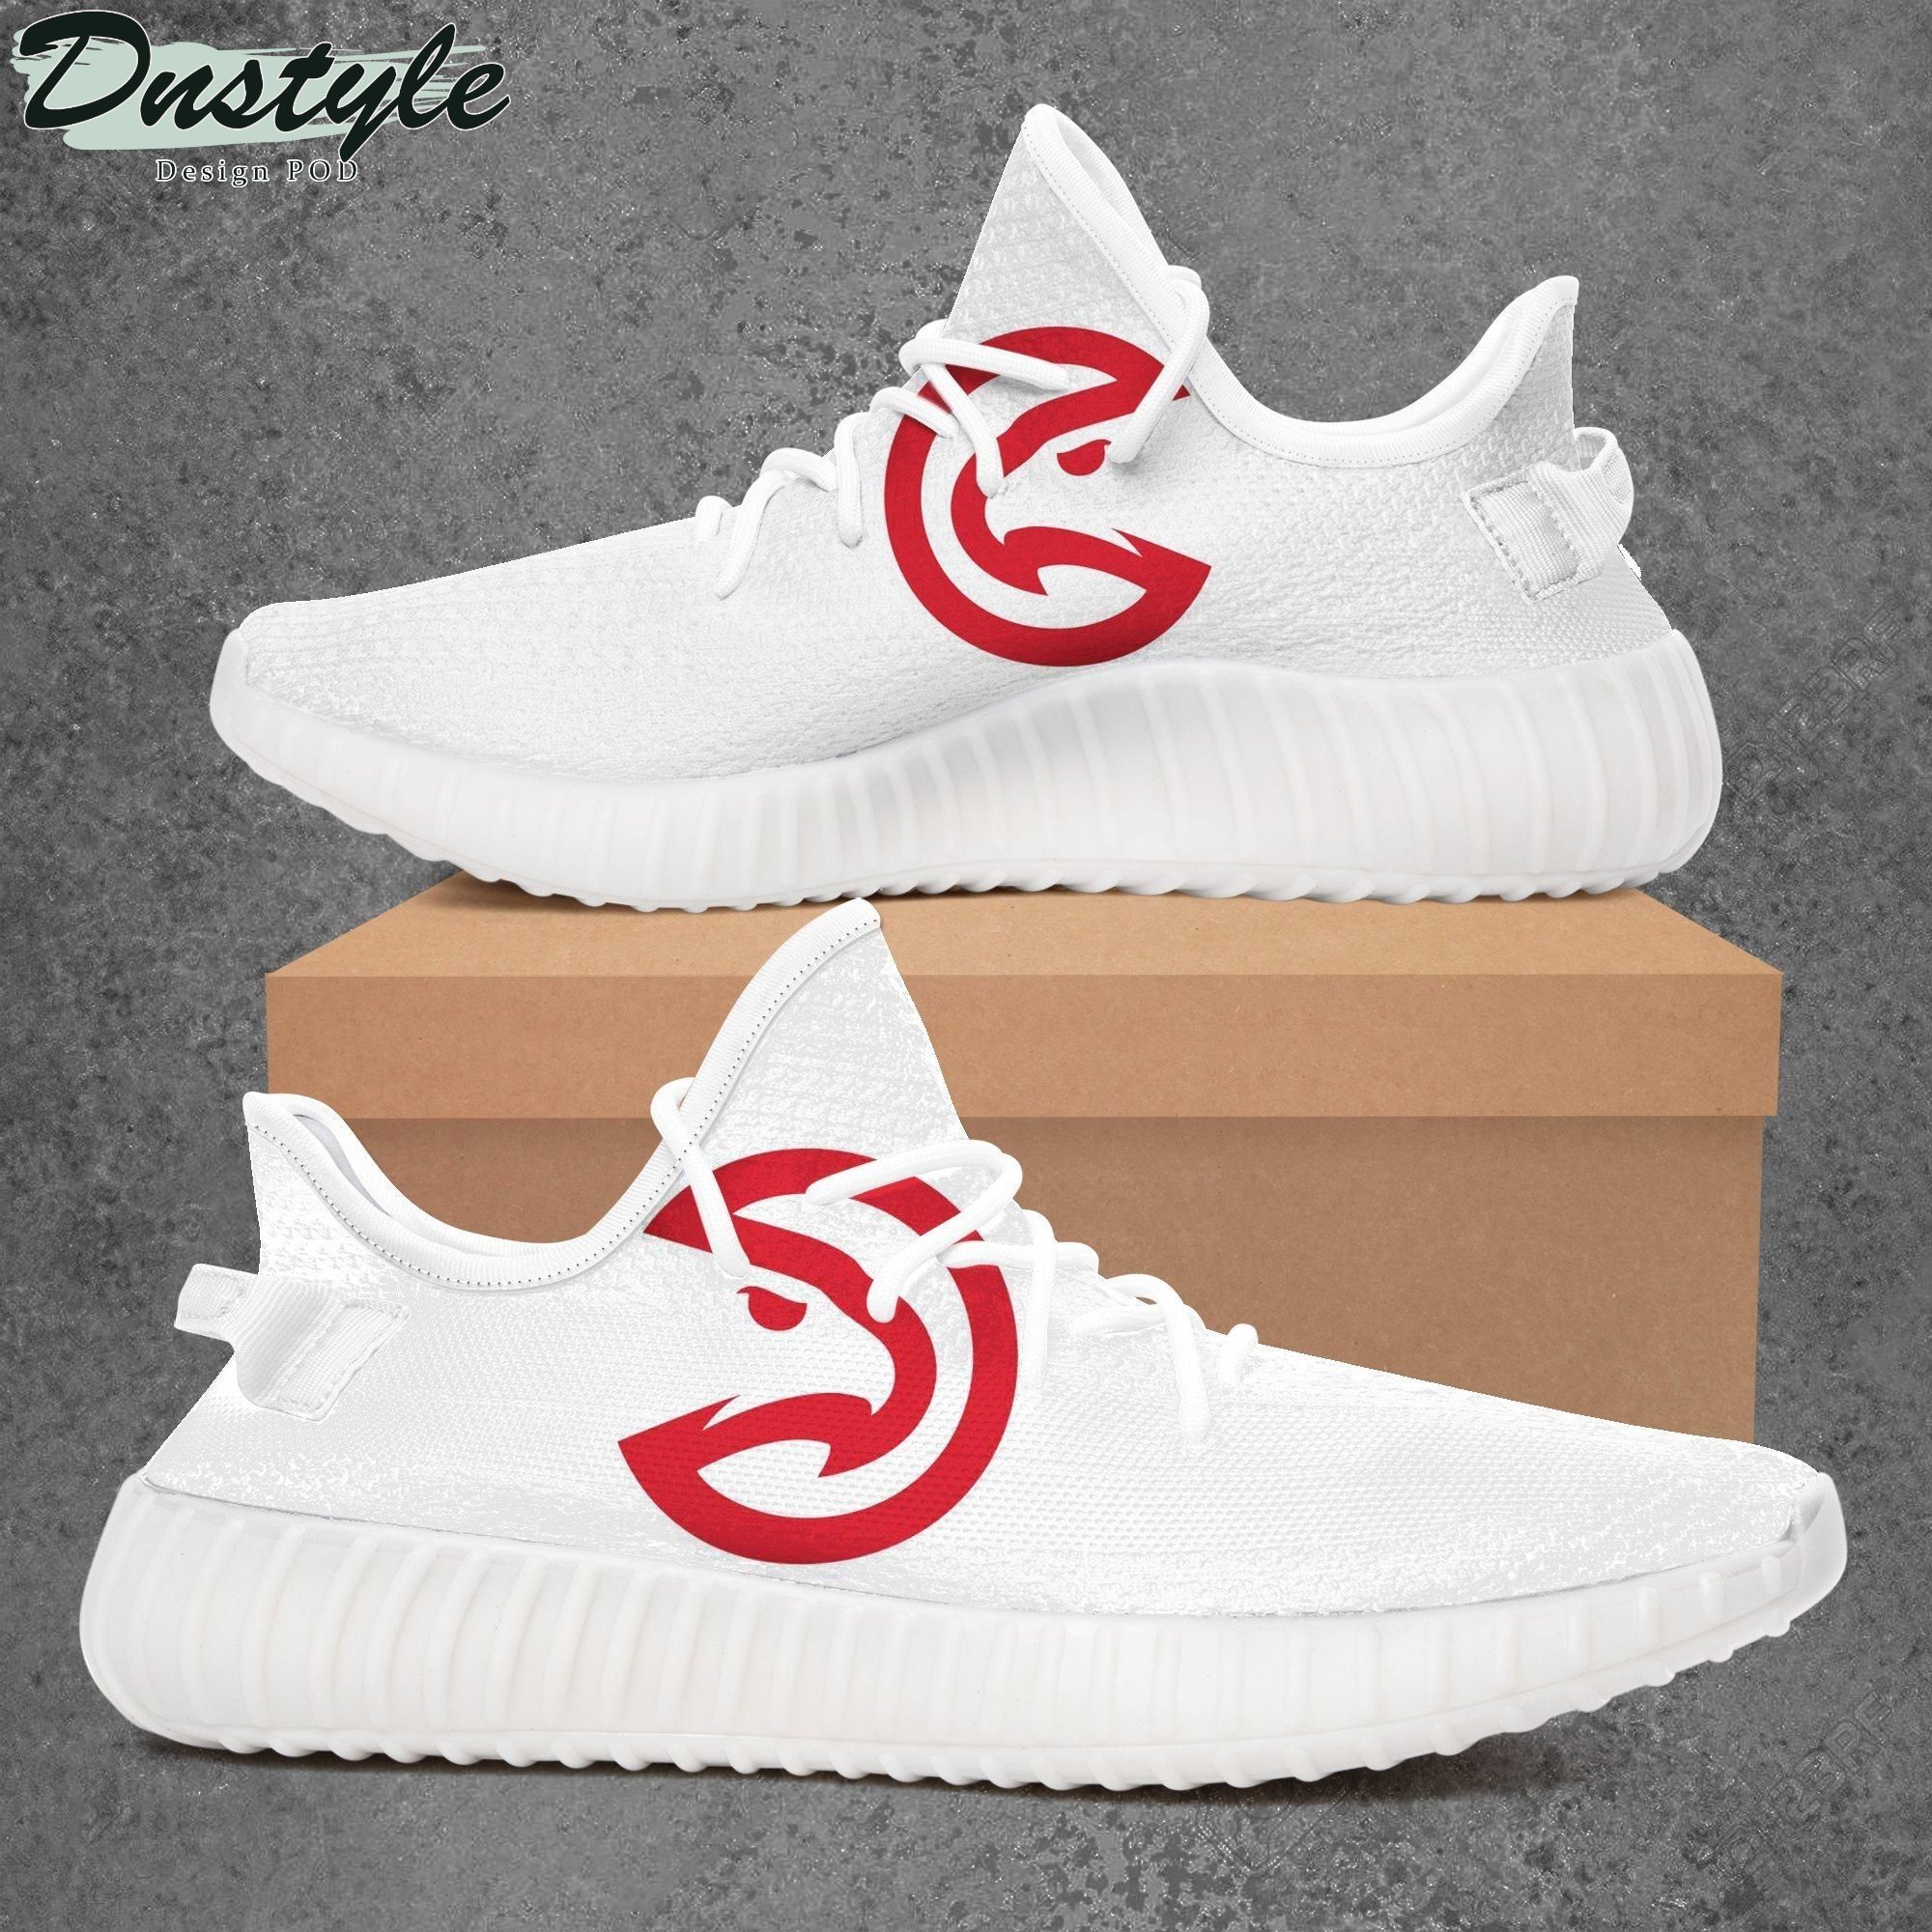 Atlanta Hawks NBA Basketball Teams Sport Teams Top Branding Trends Yeezy Shoes Sneakers